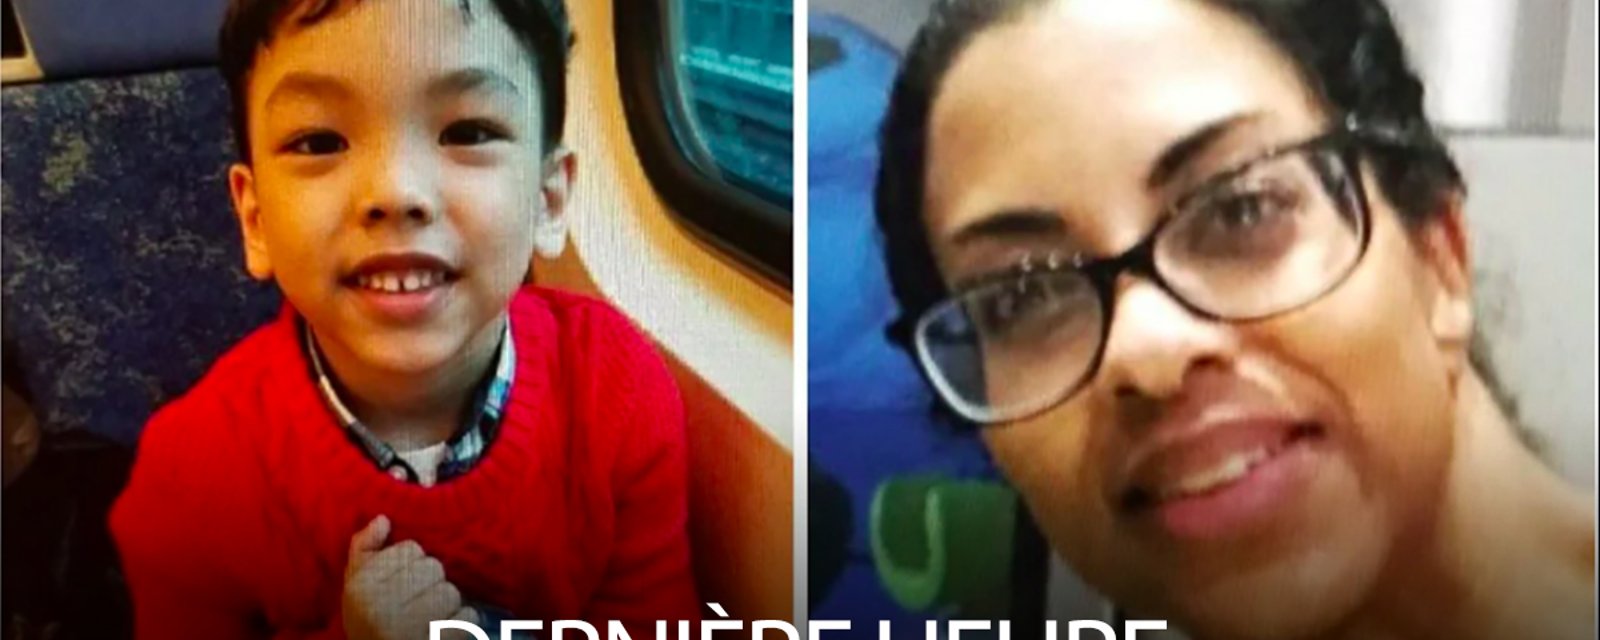 ALERTE AMBER: Un petit garçon de 5 ans aurait été enlevé par sa mère